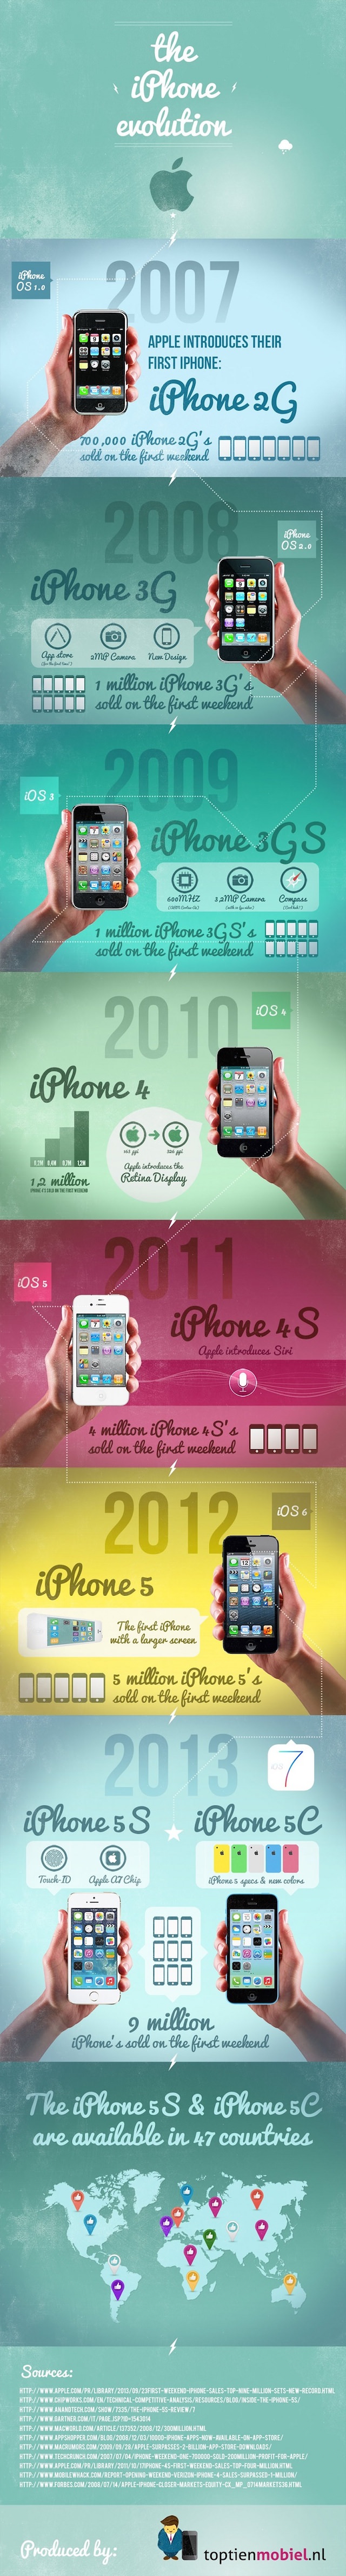 Evolución del Iphone